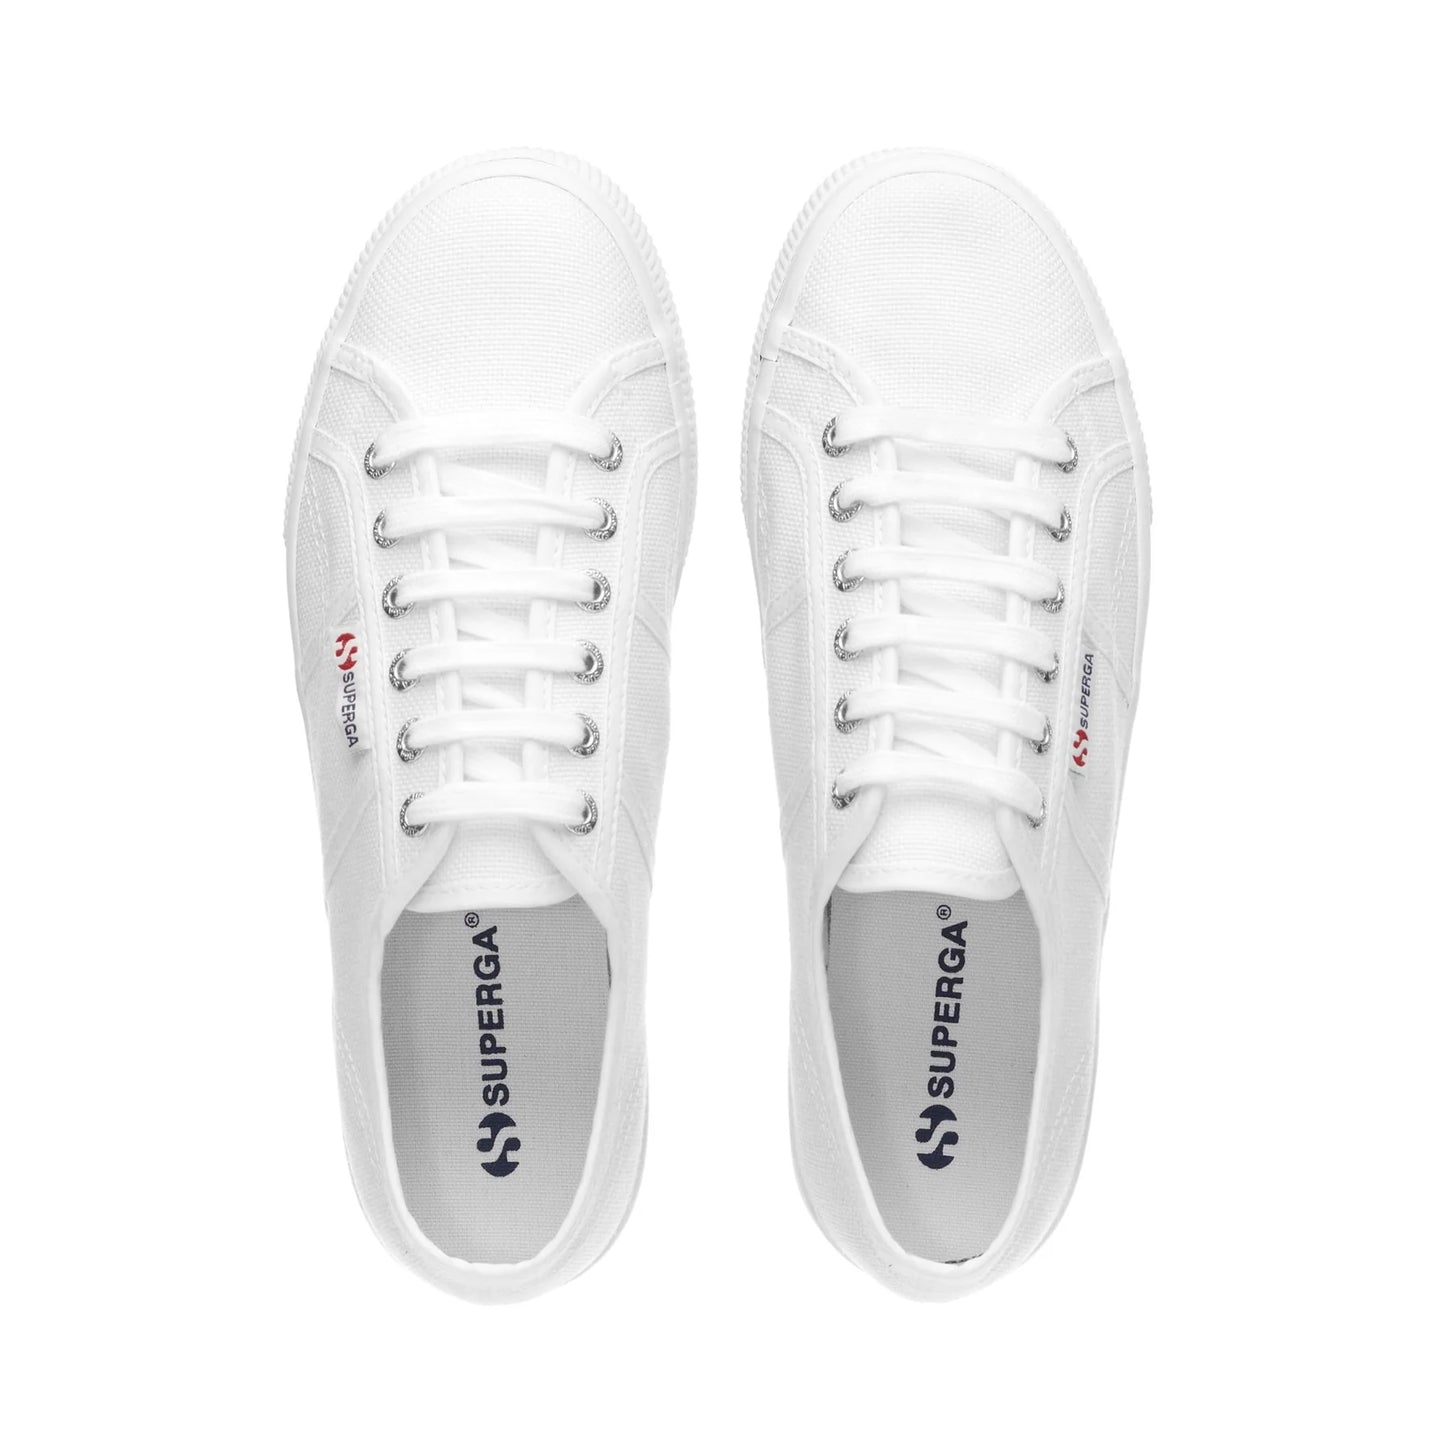 SUPERGA | 女性运动鞋 | 2790 PLATFORM WHITE | 白色的